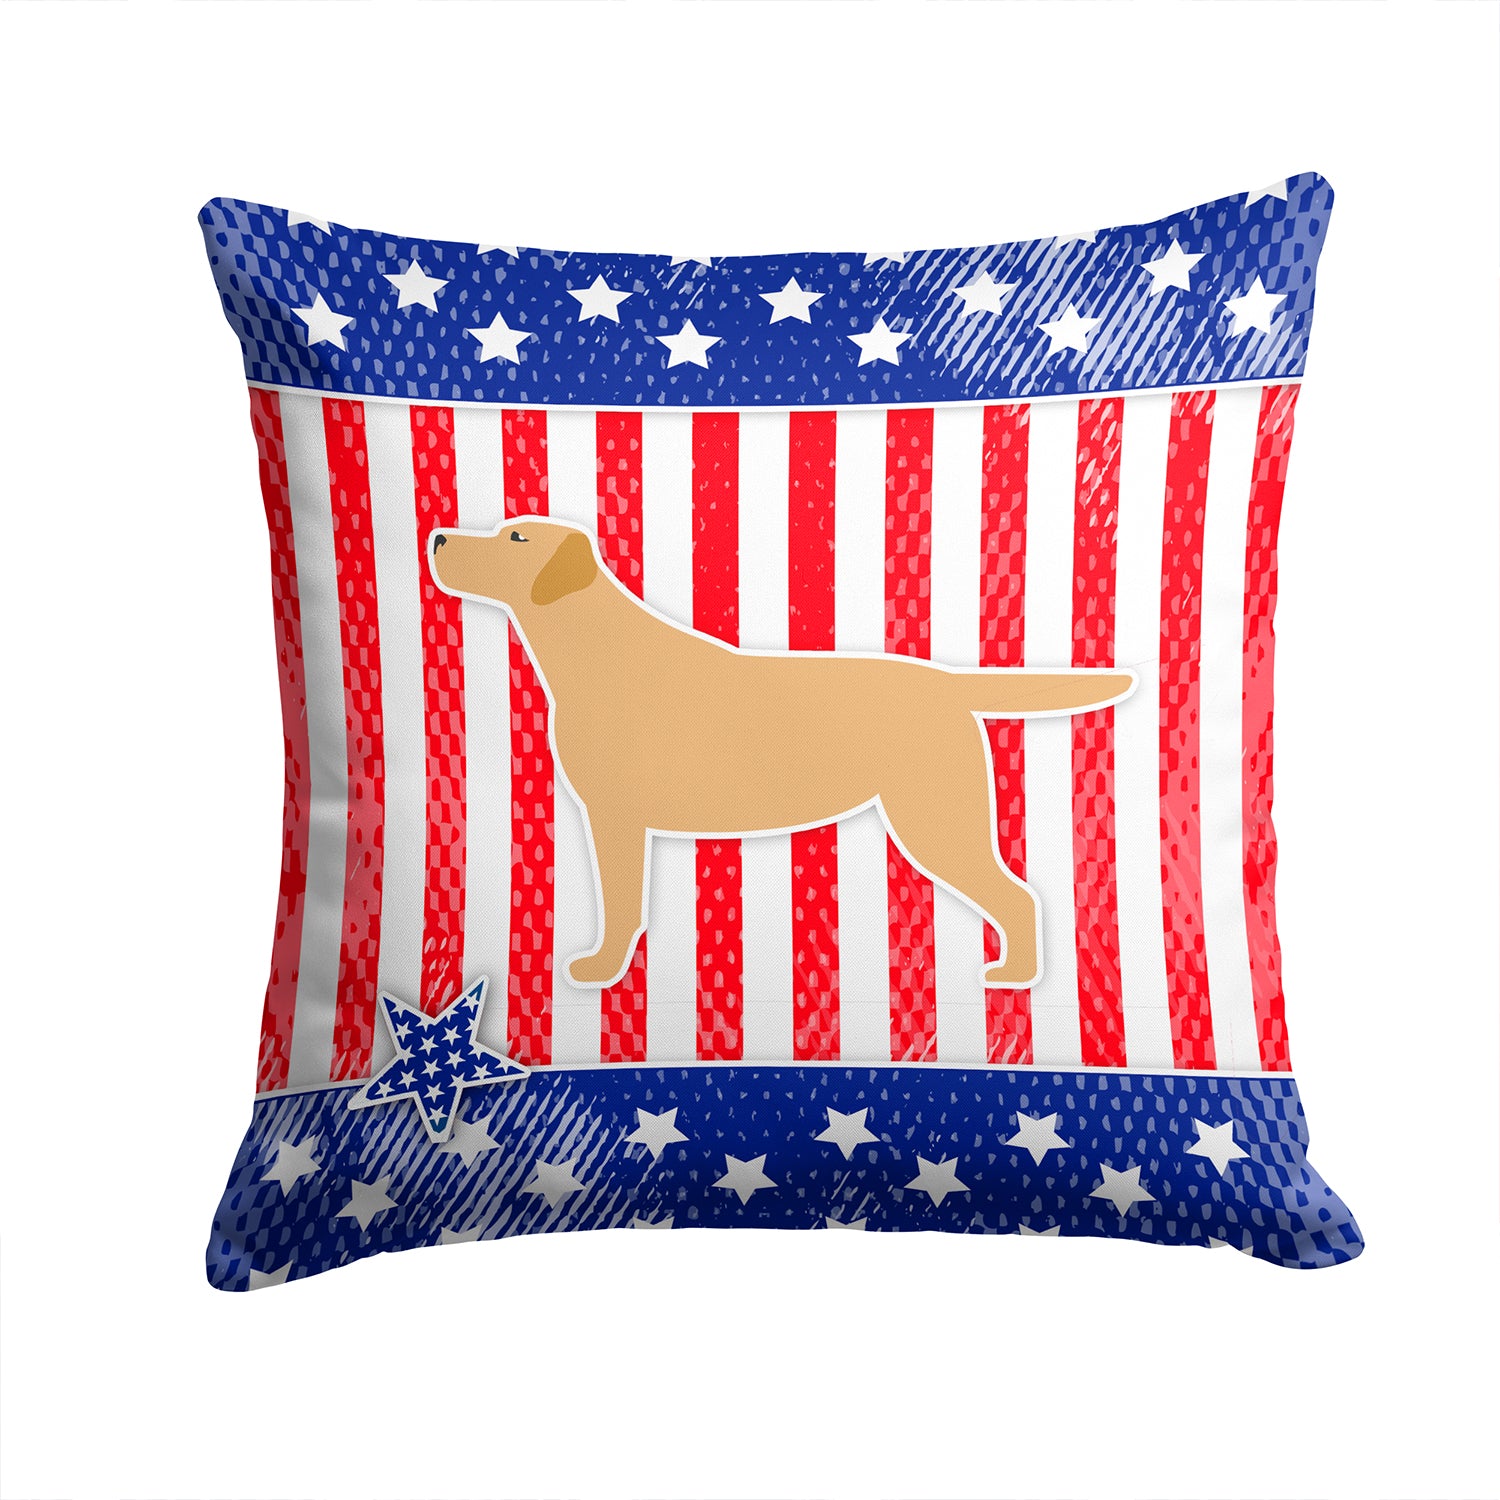 USA Patriotic Yellow Labrador Retriever Fabric Decorative Pillow BB3297PW1414 - the-store.com